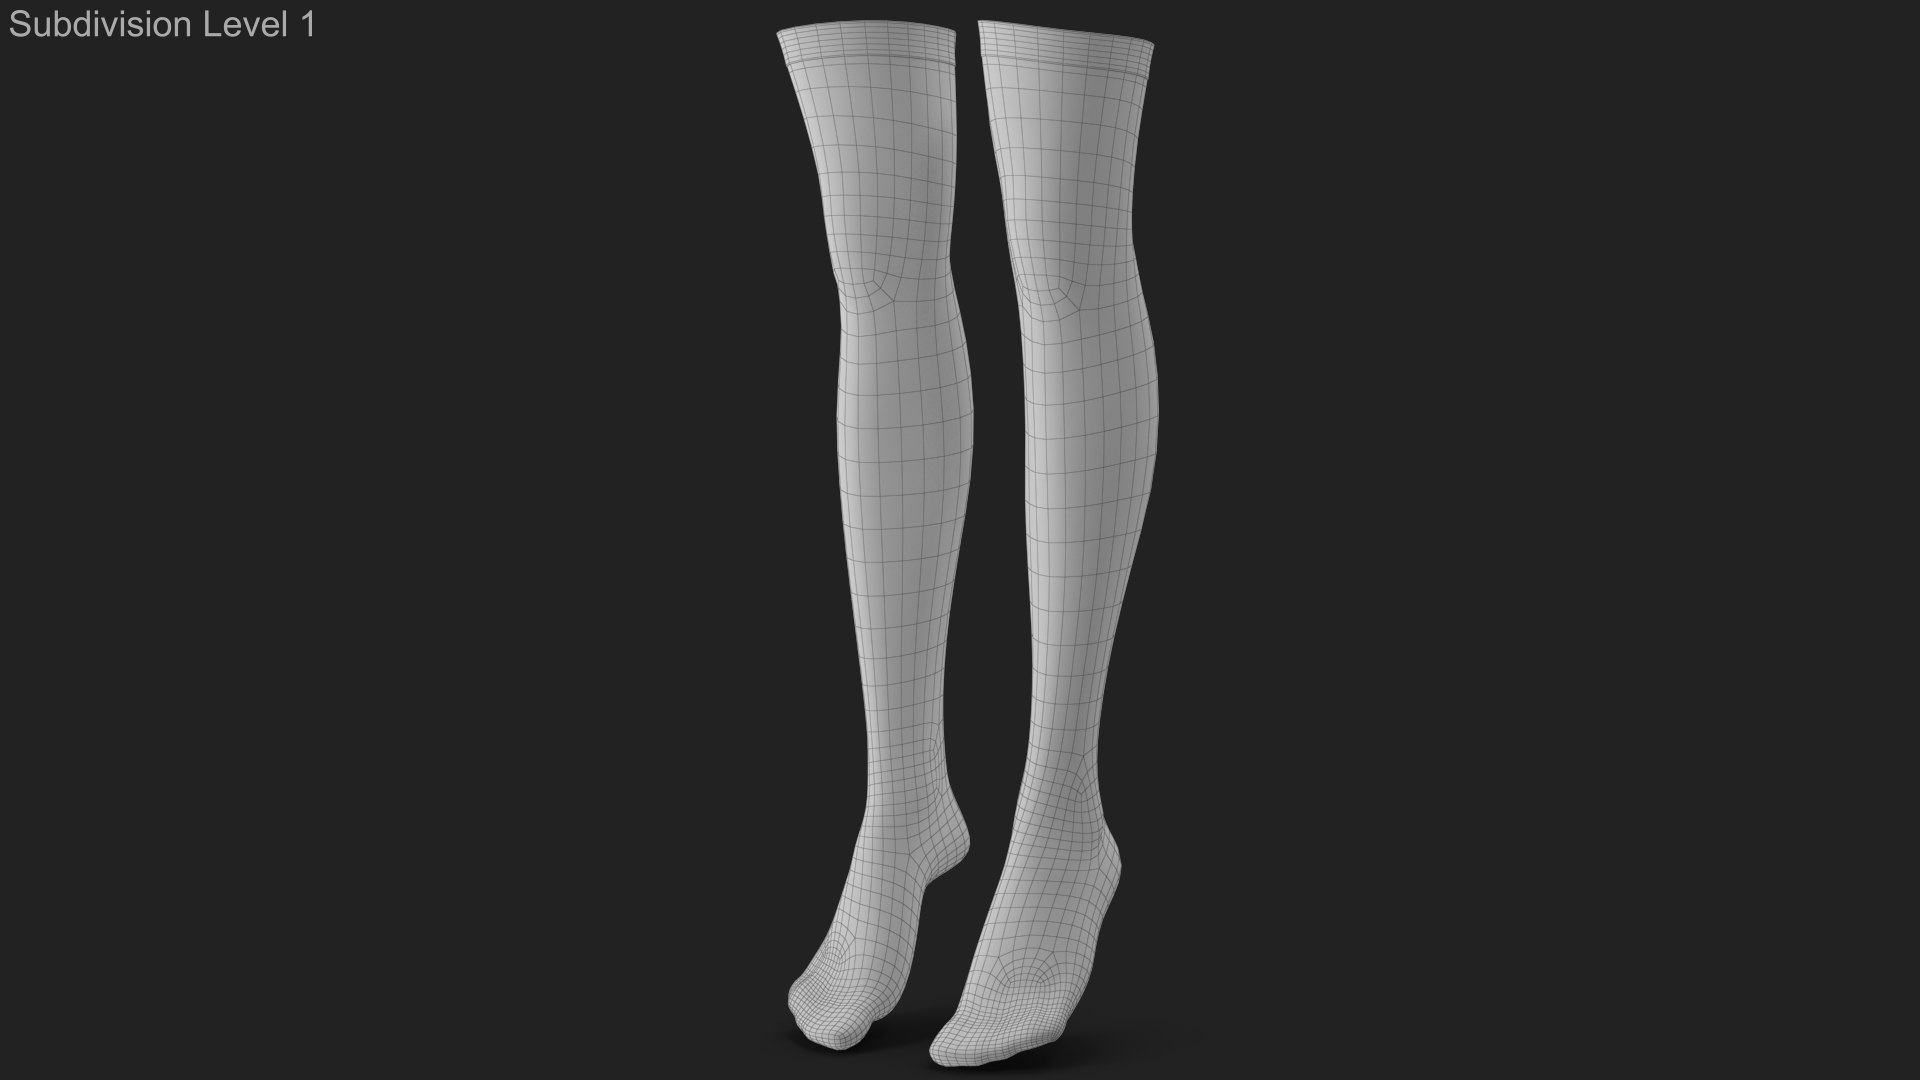 3D Stockings 3 - TurboSquid 1773152